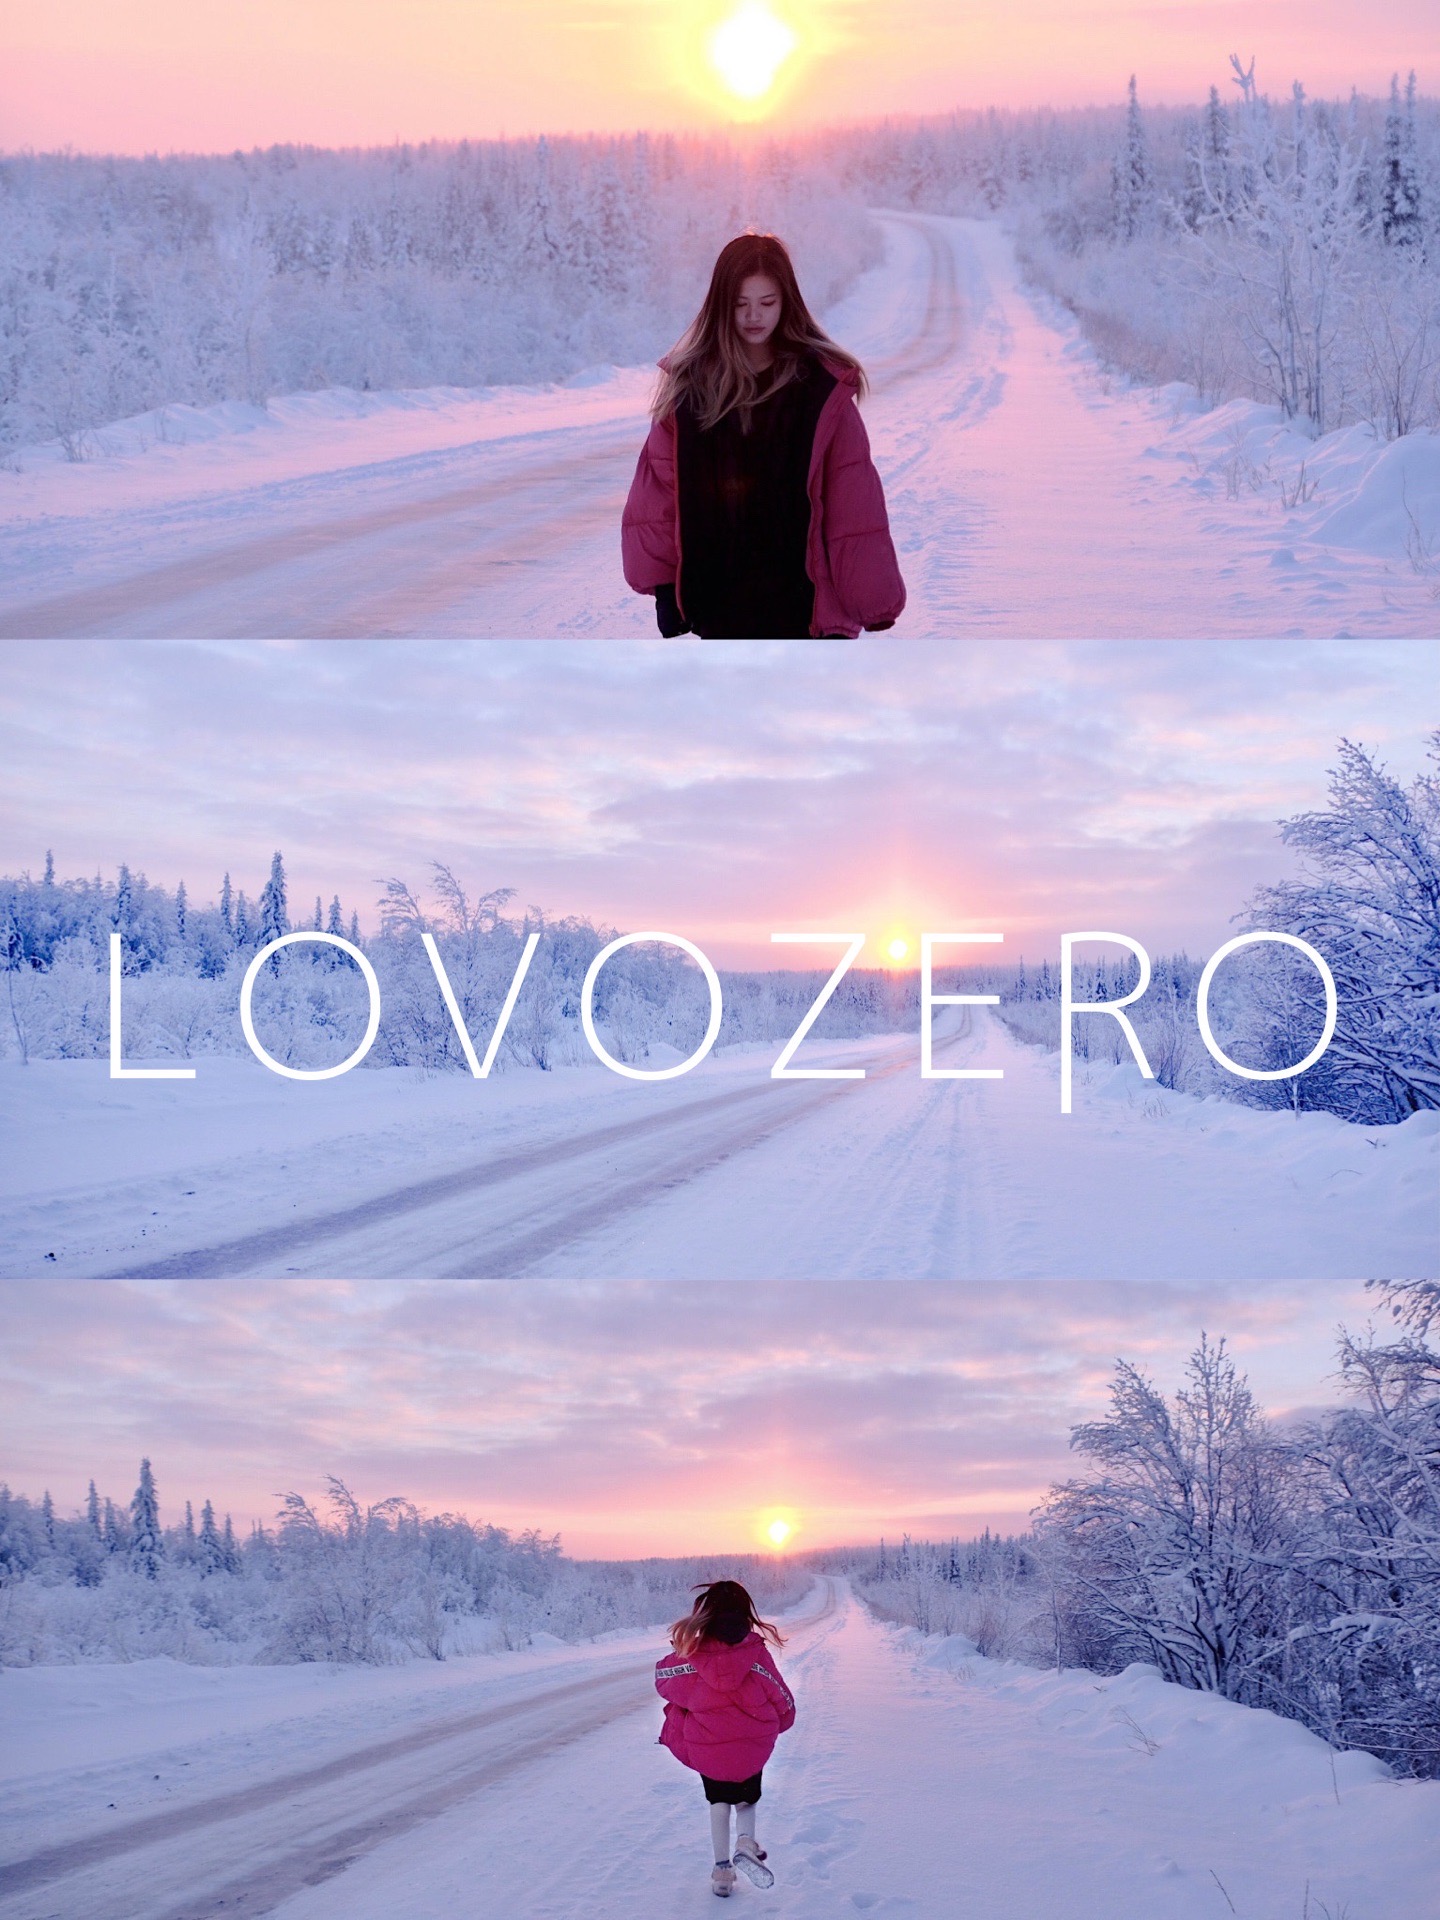 为你下一场粉红色的雪💕超美💟无滤镜❣️  图1⃣️是从摩尔曼斯克到lovozero途中拍到的，在北极